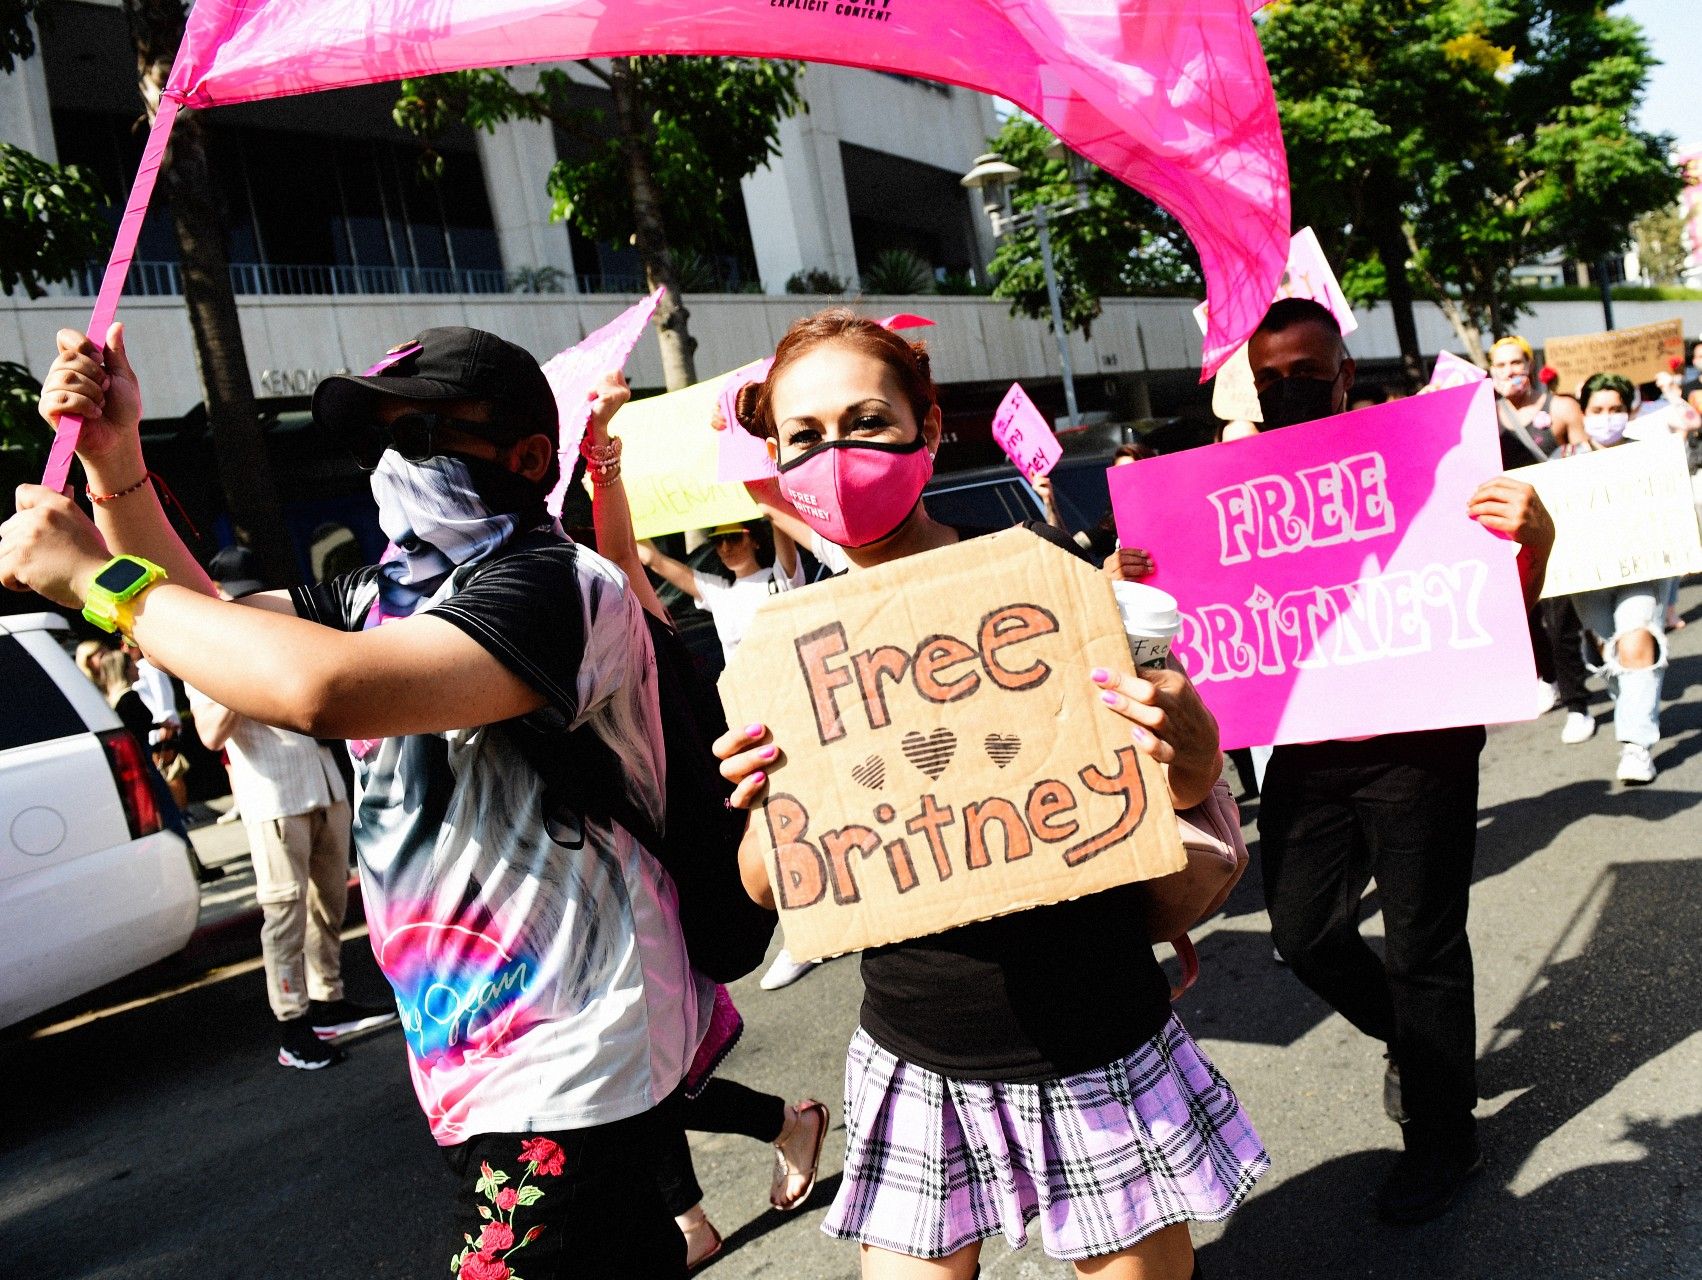 Ungdommen gik på gaden i kampen om at befrie Britney Spears. Kilde: Getty Images